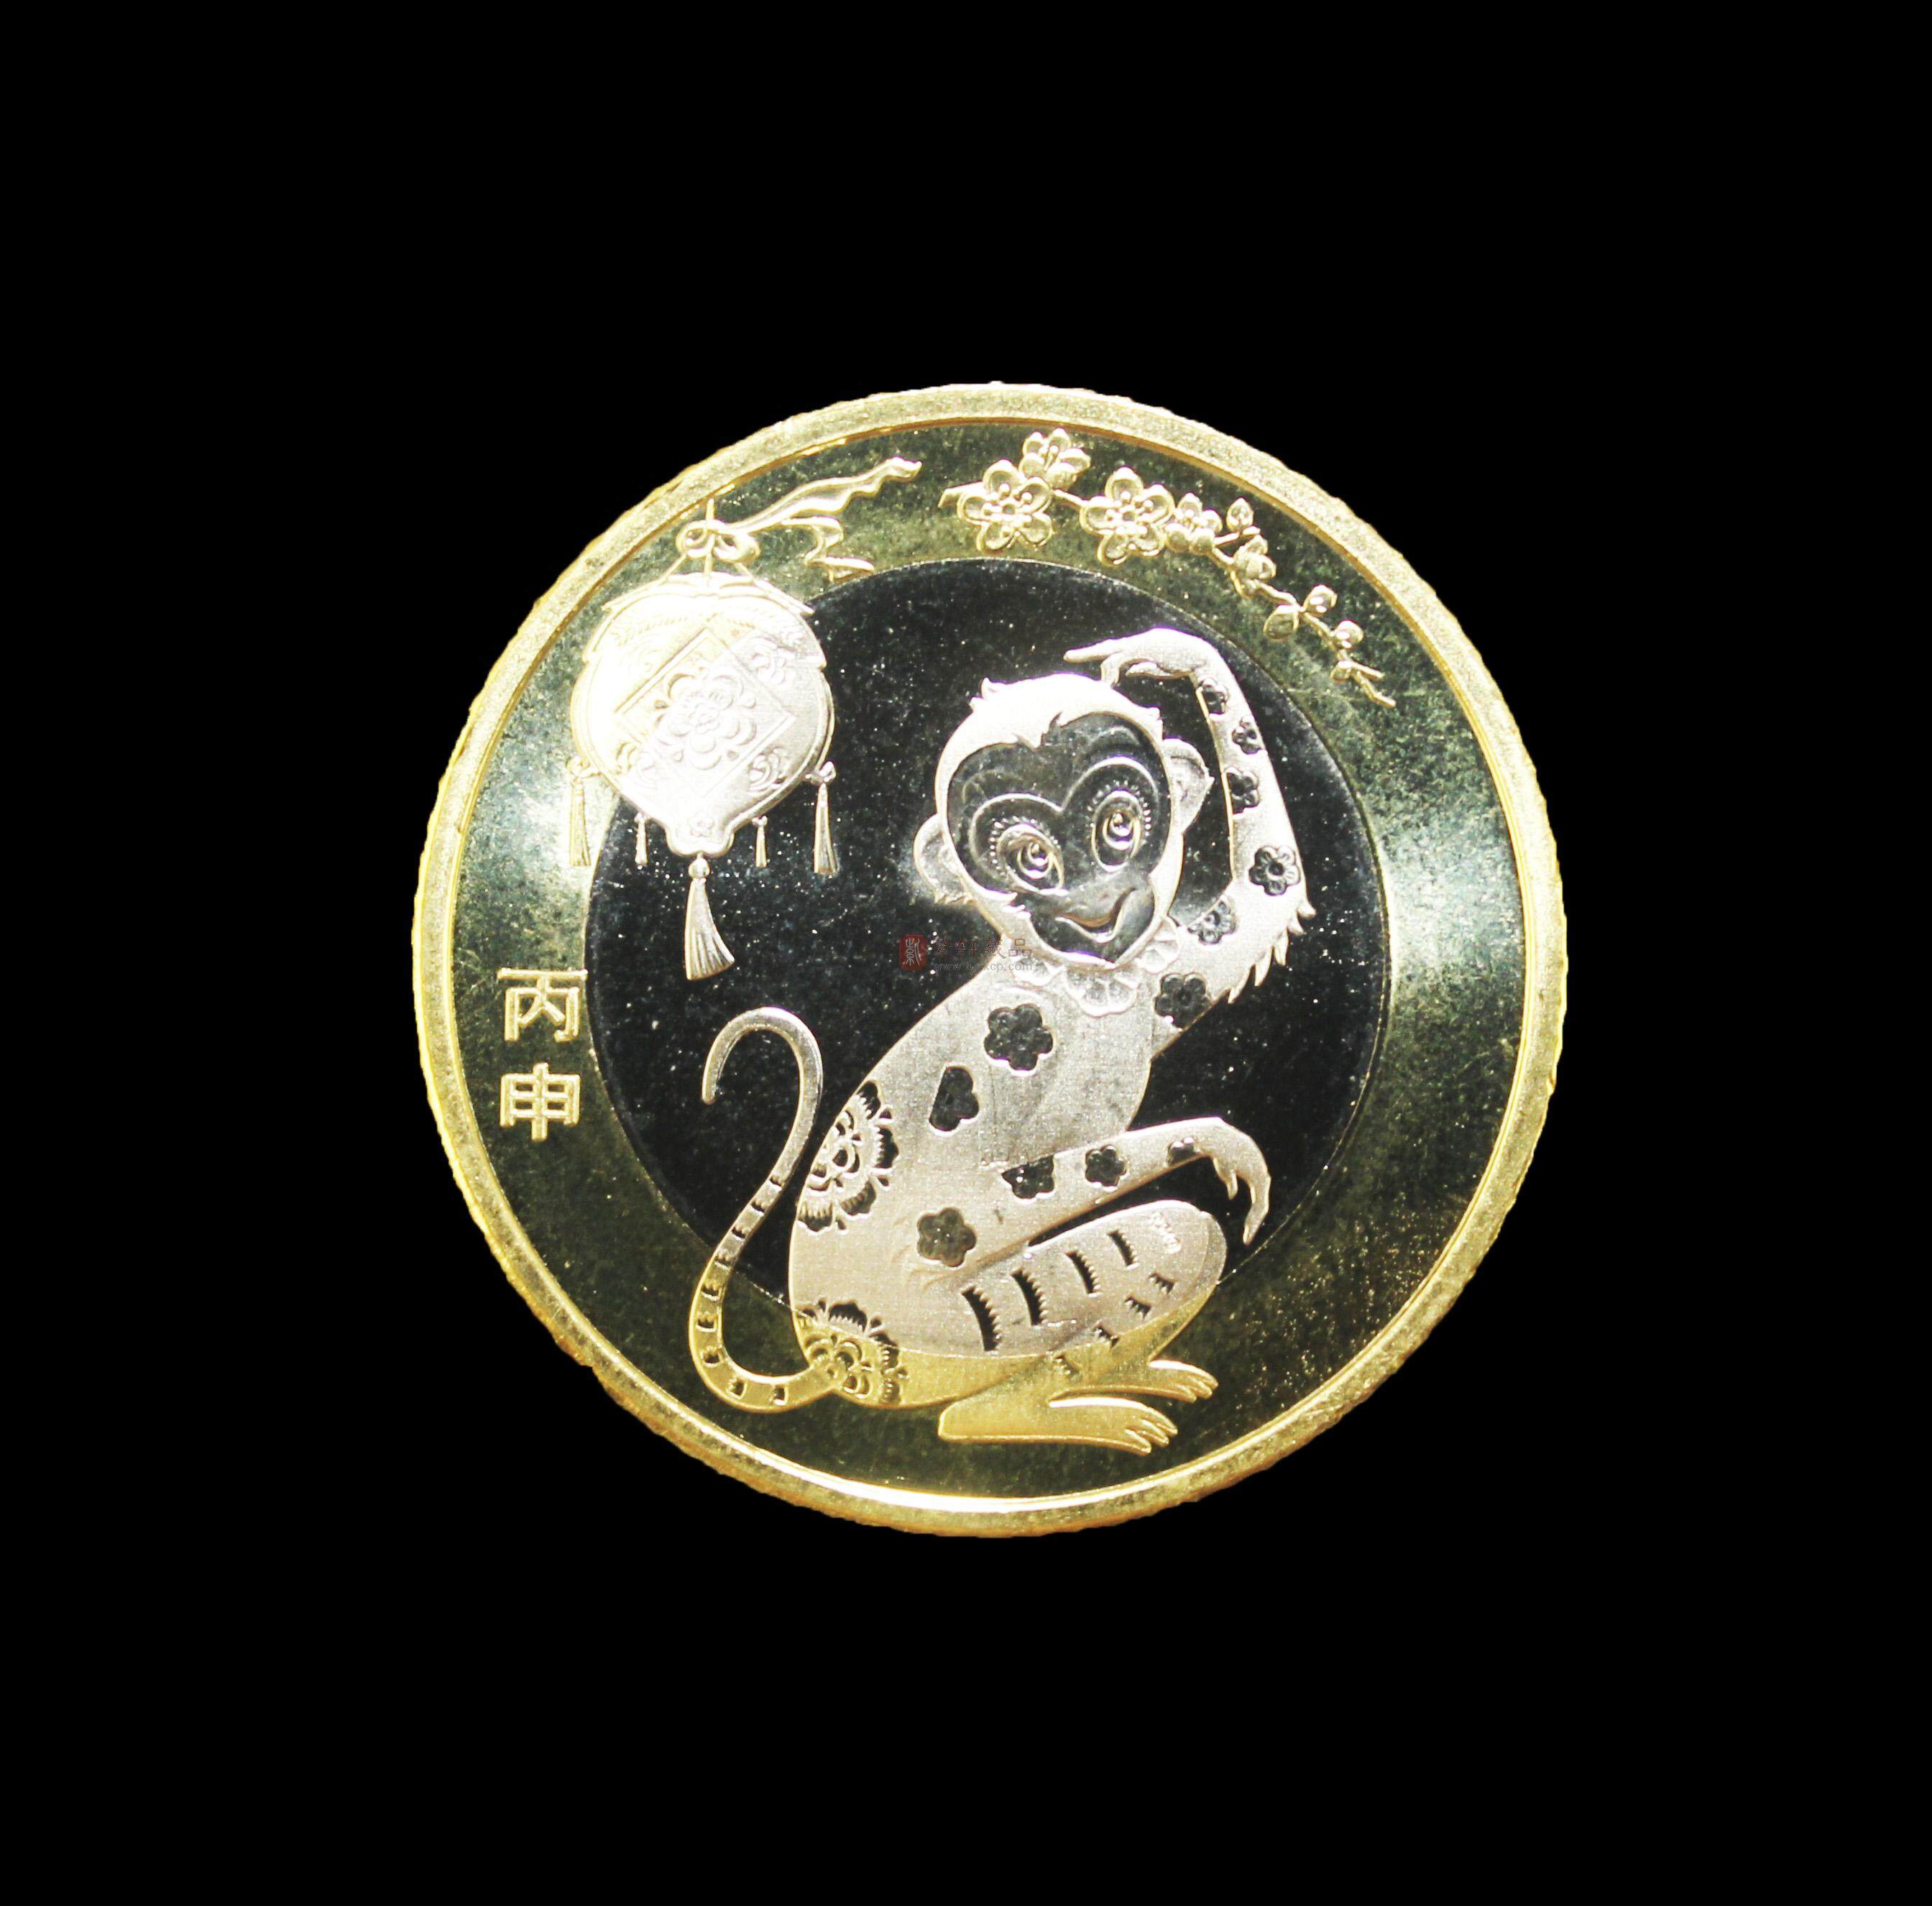 中国人民银行2016年发行生肖《猴》，面值10元纪念币-价格:30元-se85402835-普通纪念币-零售-7788收藏__收藏热线